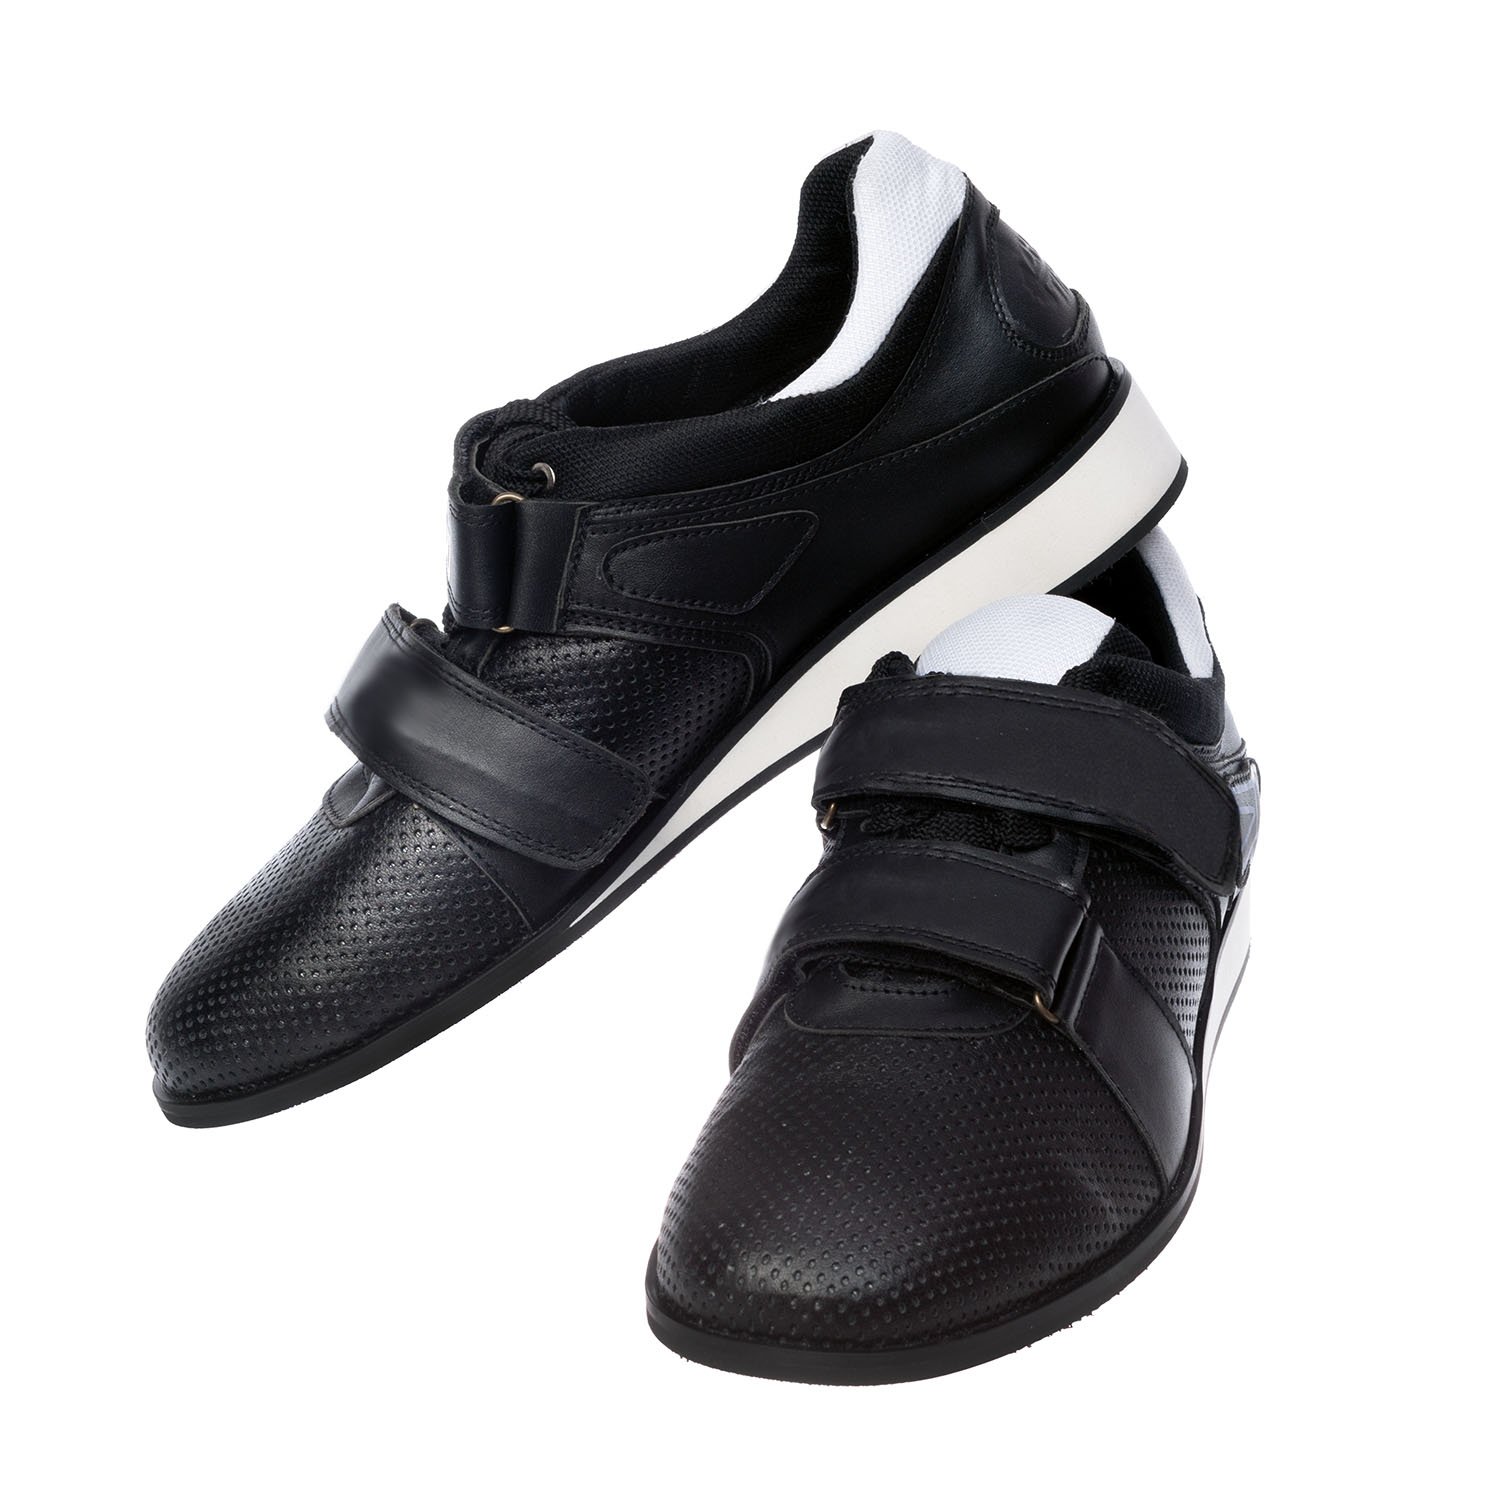 Weightlifting shoes Zhabotinsky Classic, black, size 39 (UKR)